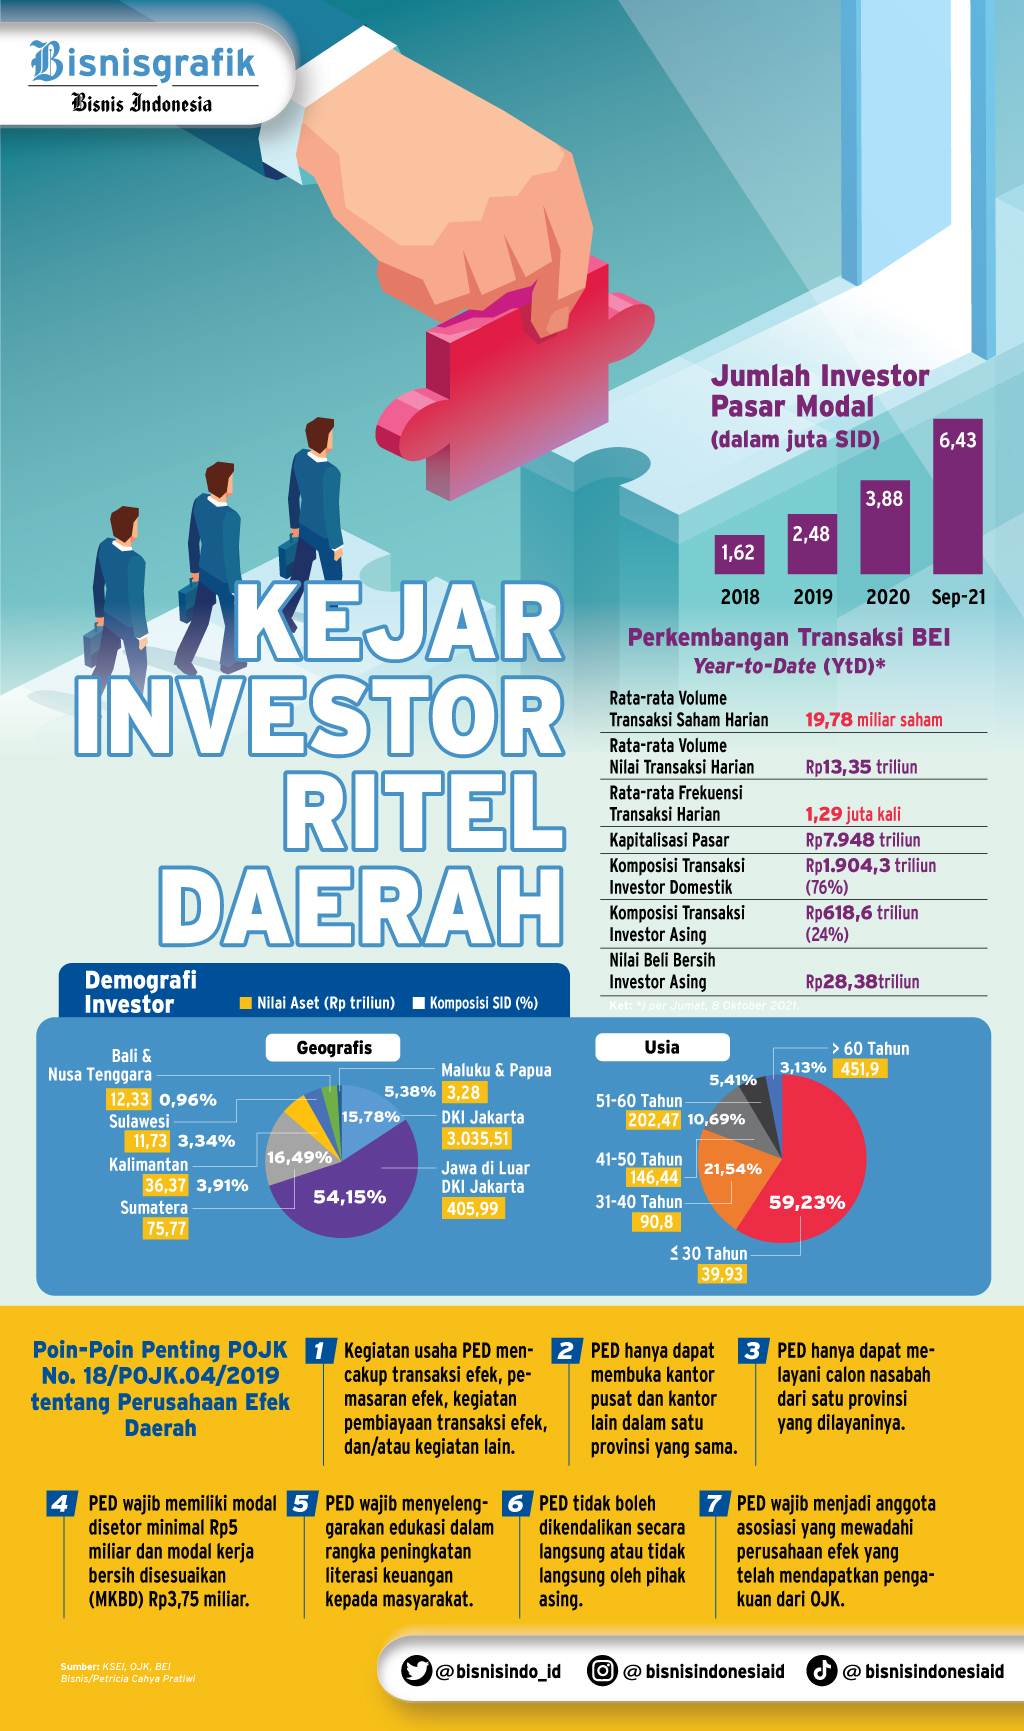  Top 5 News Bisnisindonesia.id: Memacu Investasi Pasar Modal di Daerah, Harga Minyak Terus Memanas